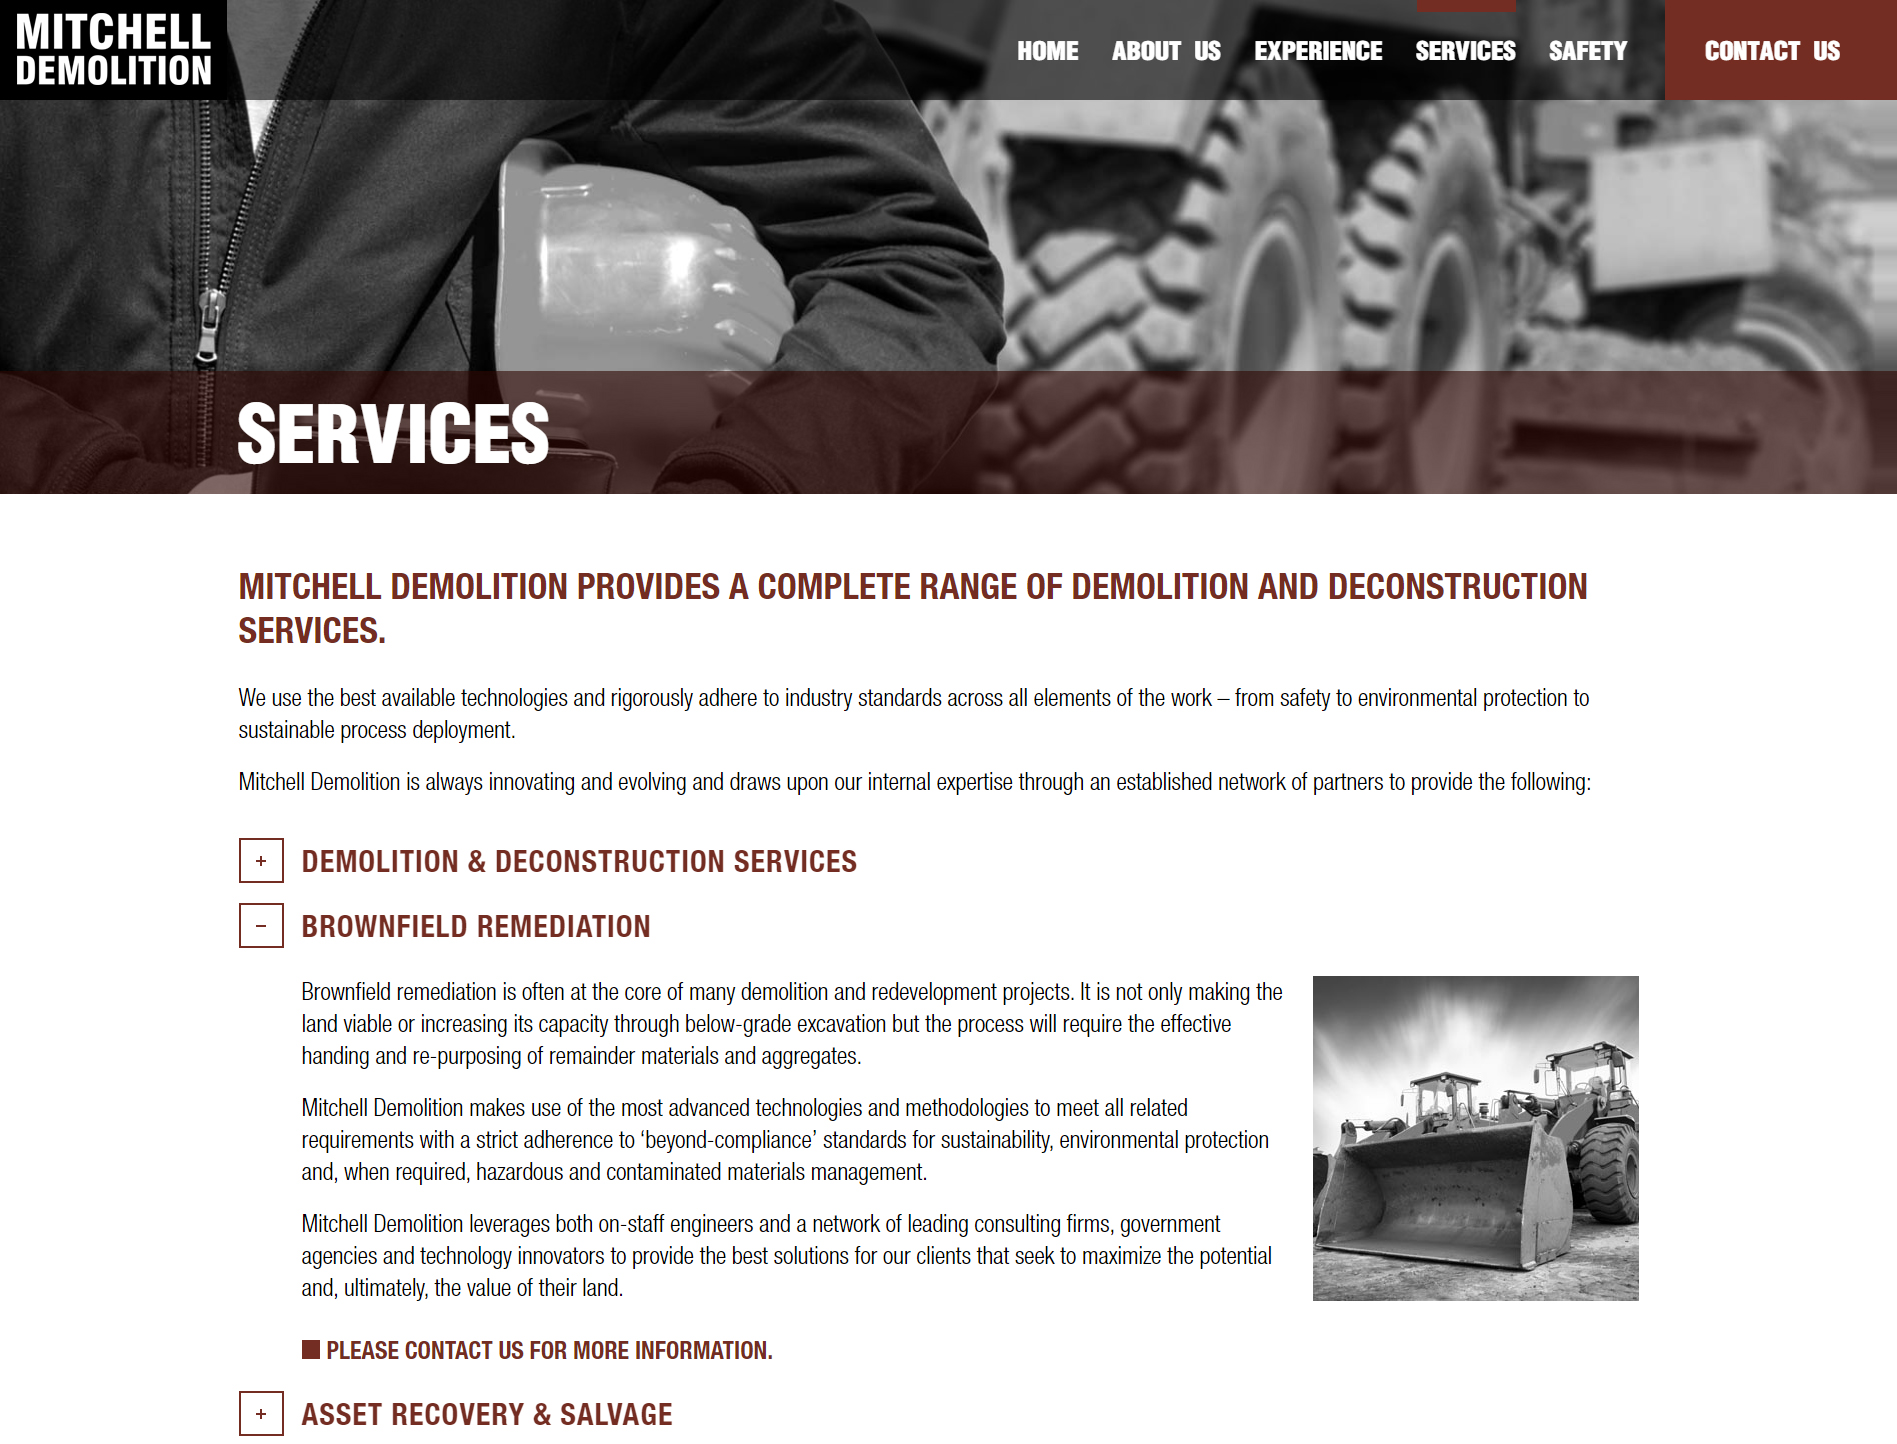 Demolition & Deconstruction Services